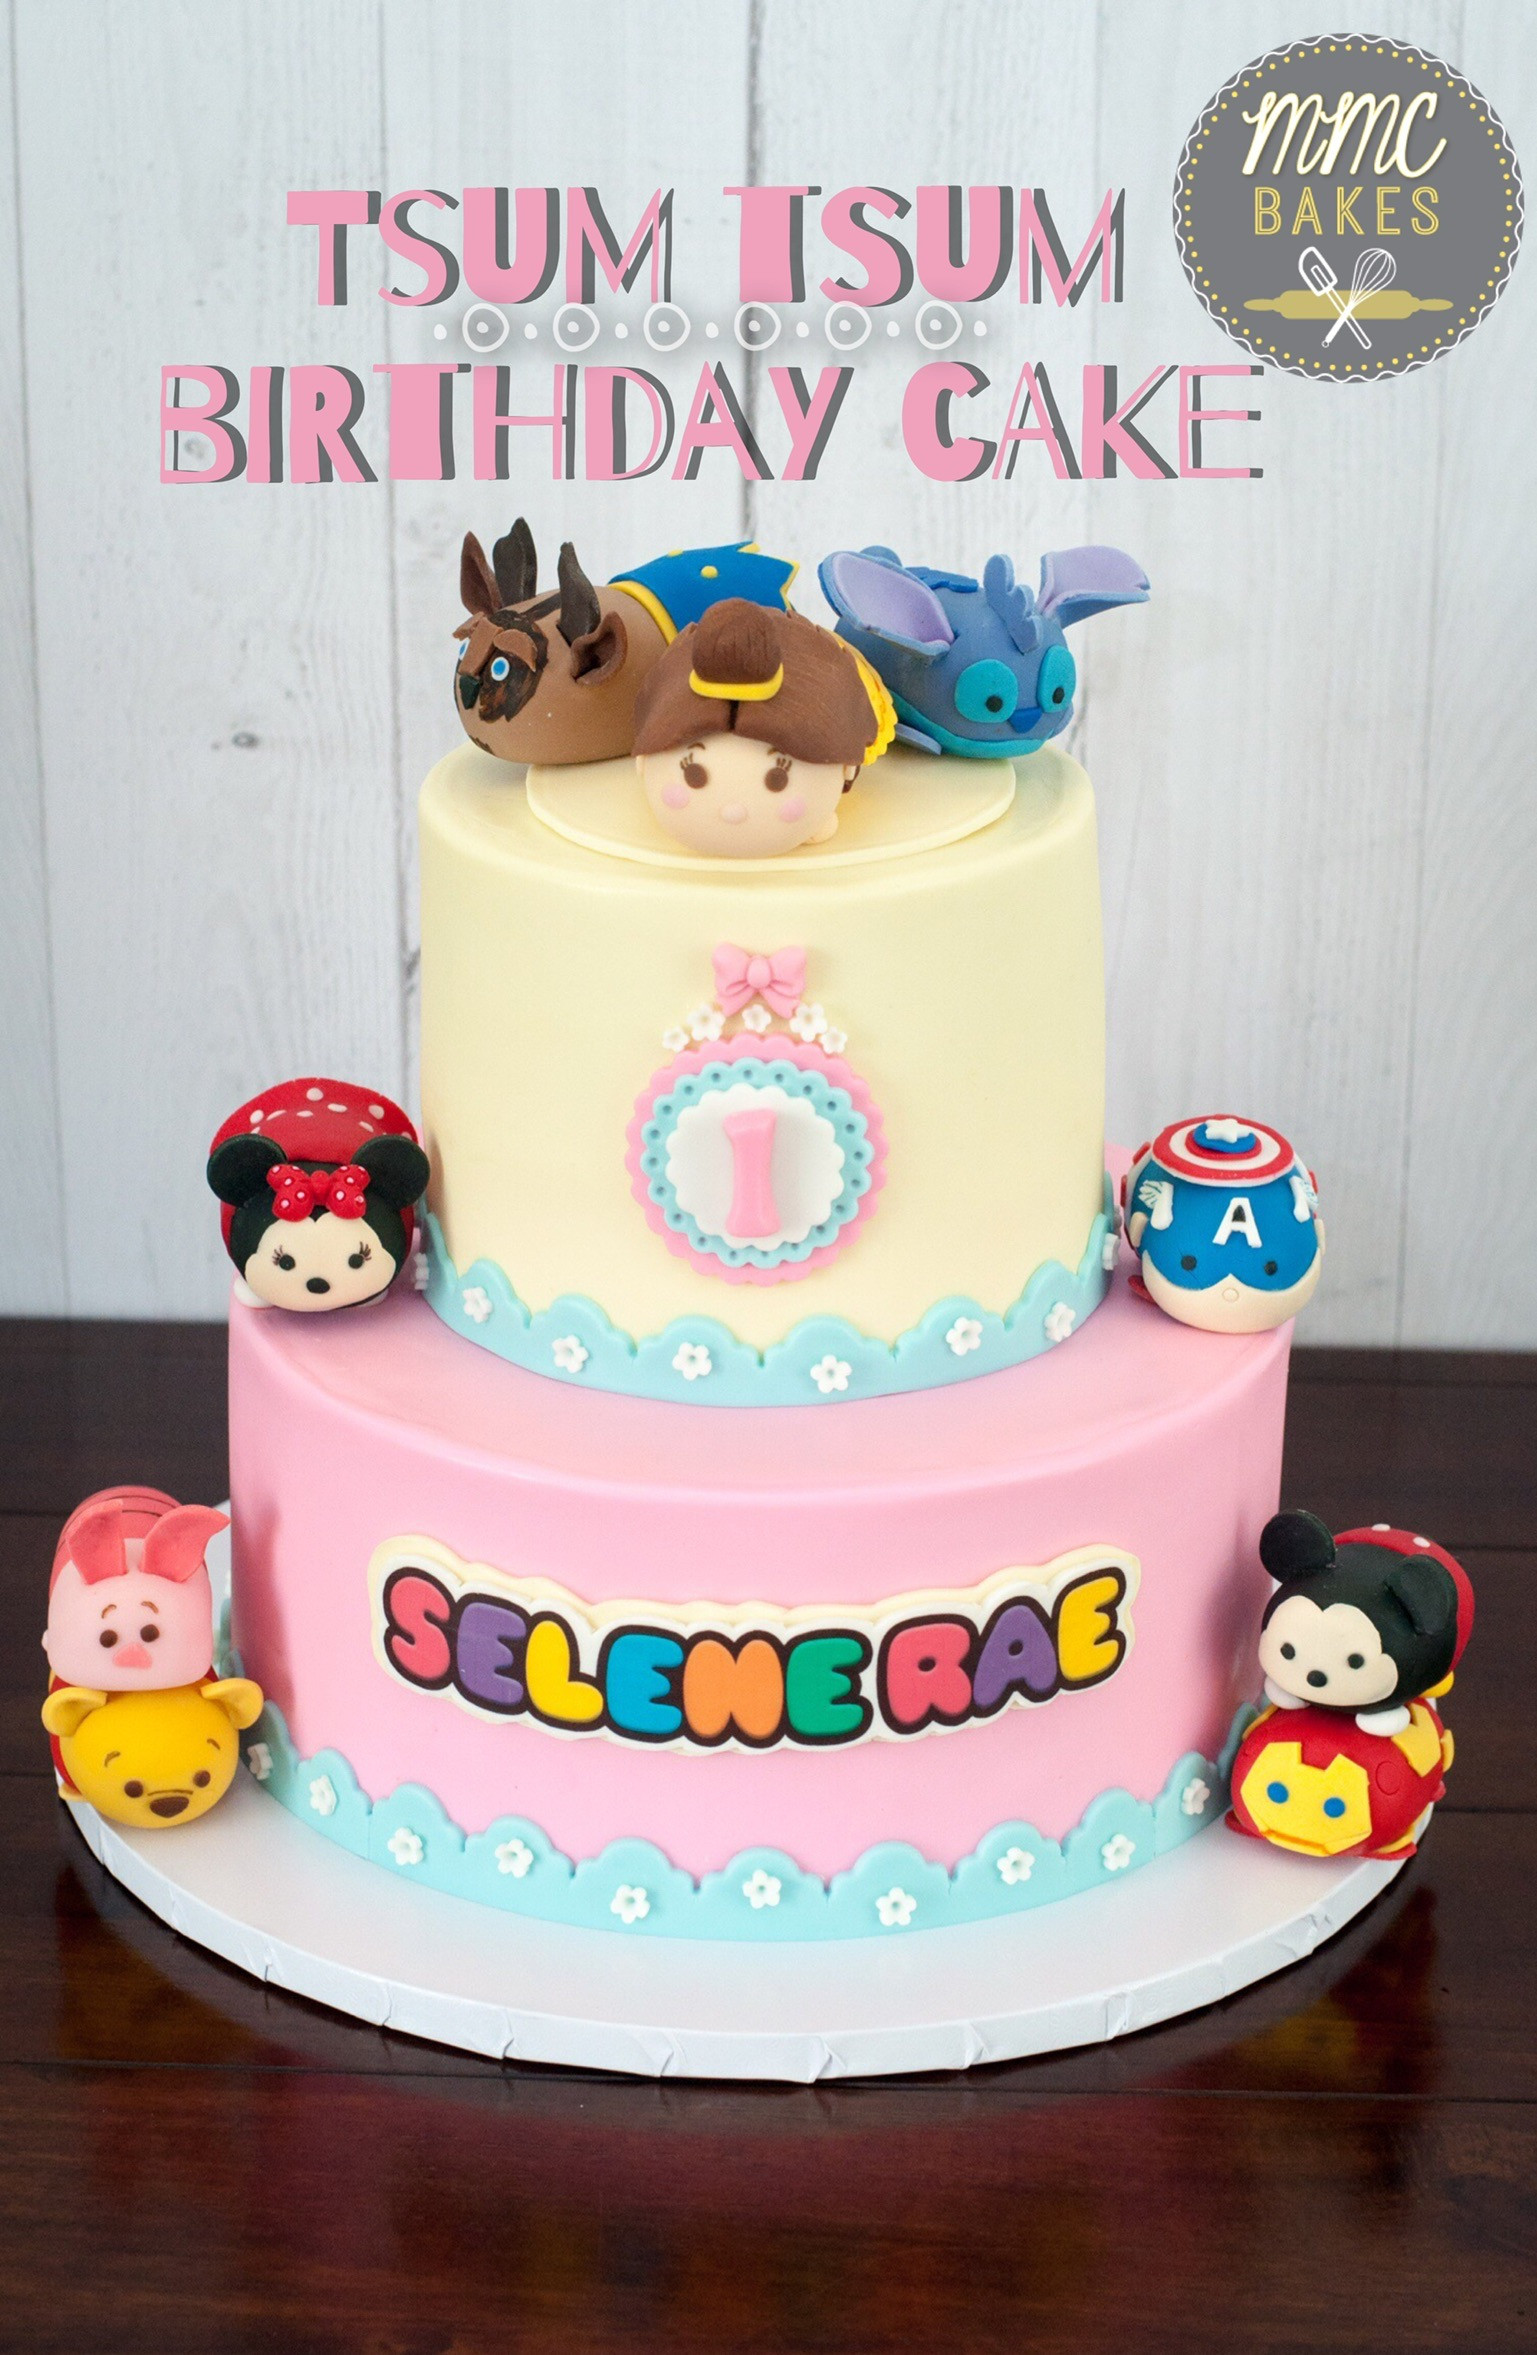 Best ideas about Tsum Tsum Birthday Cake
. Save or Pin Tsum Tsum Birthday Cake – MMC Bakes Now.